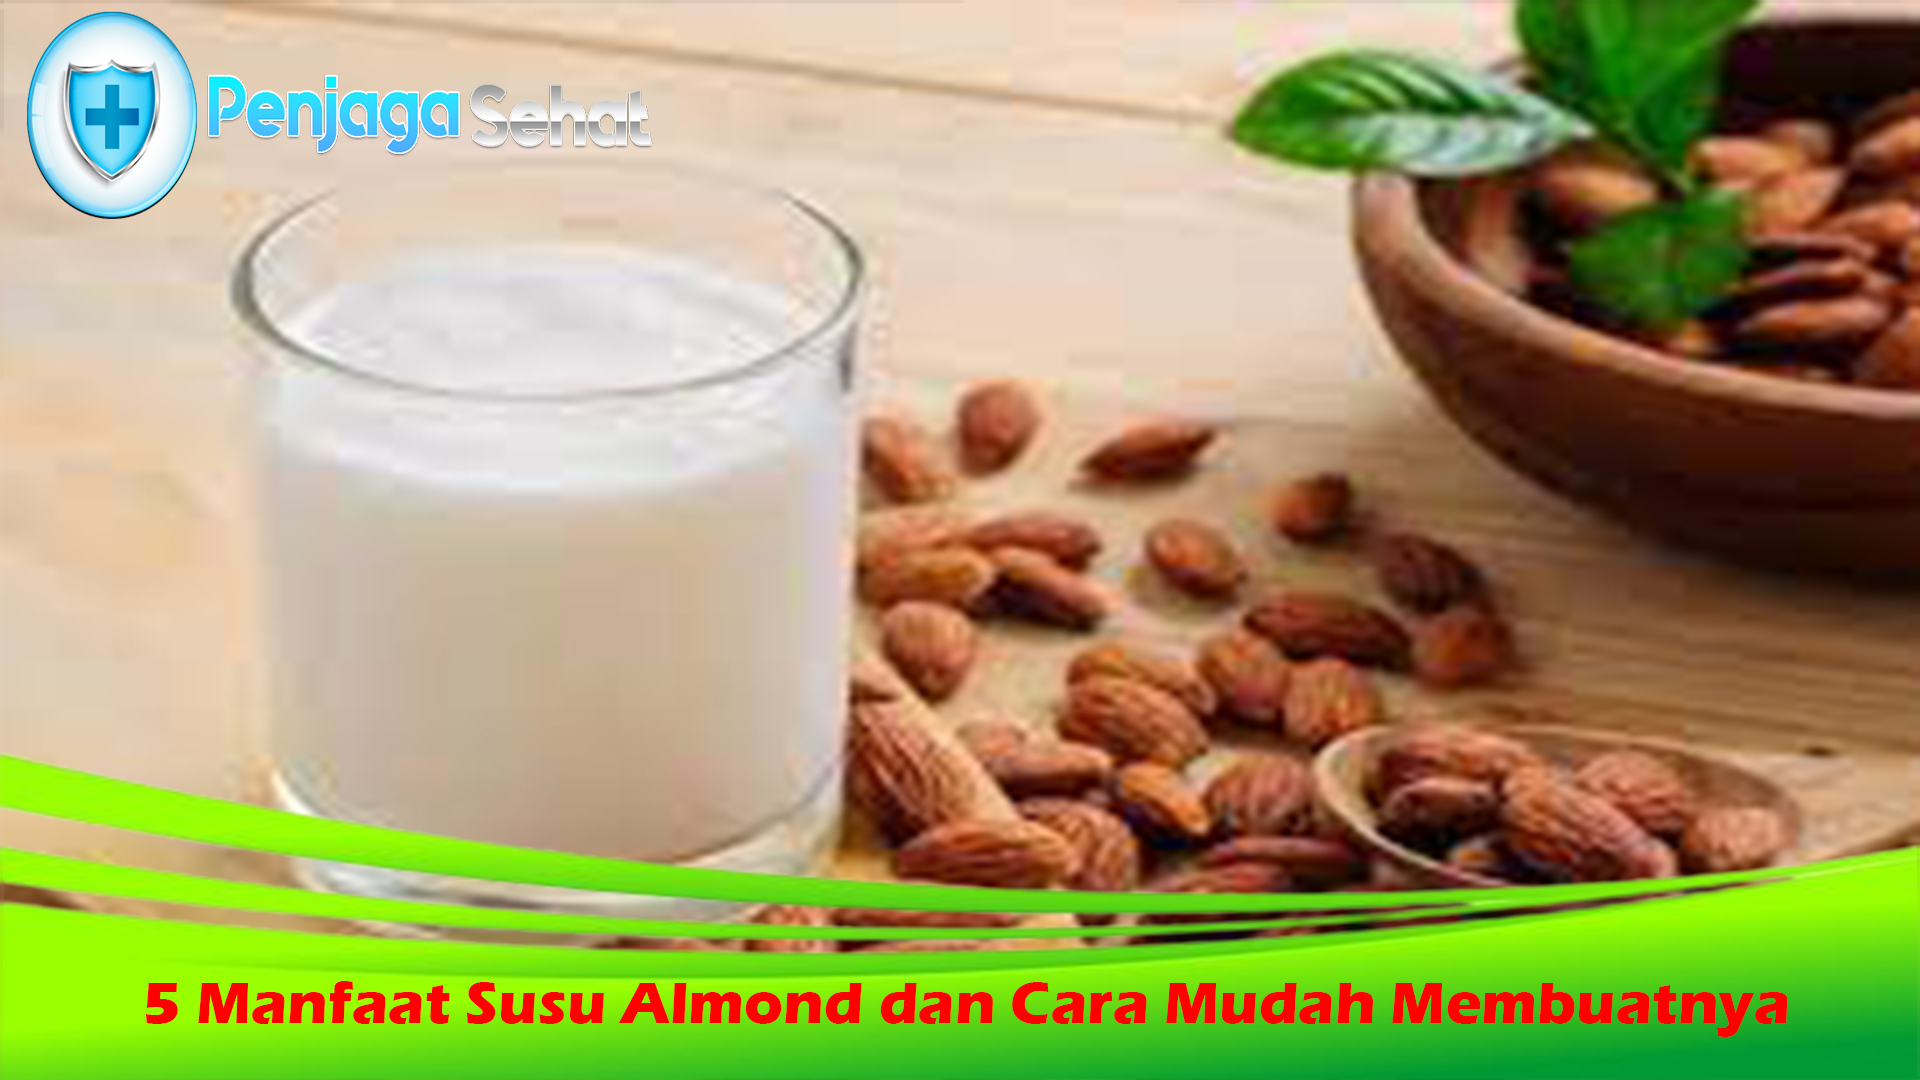 5 Manfaat Susu Almond dan Cara Mudah Membuatnya